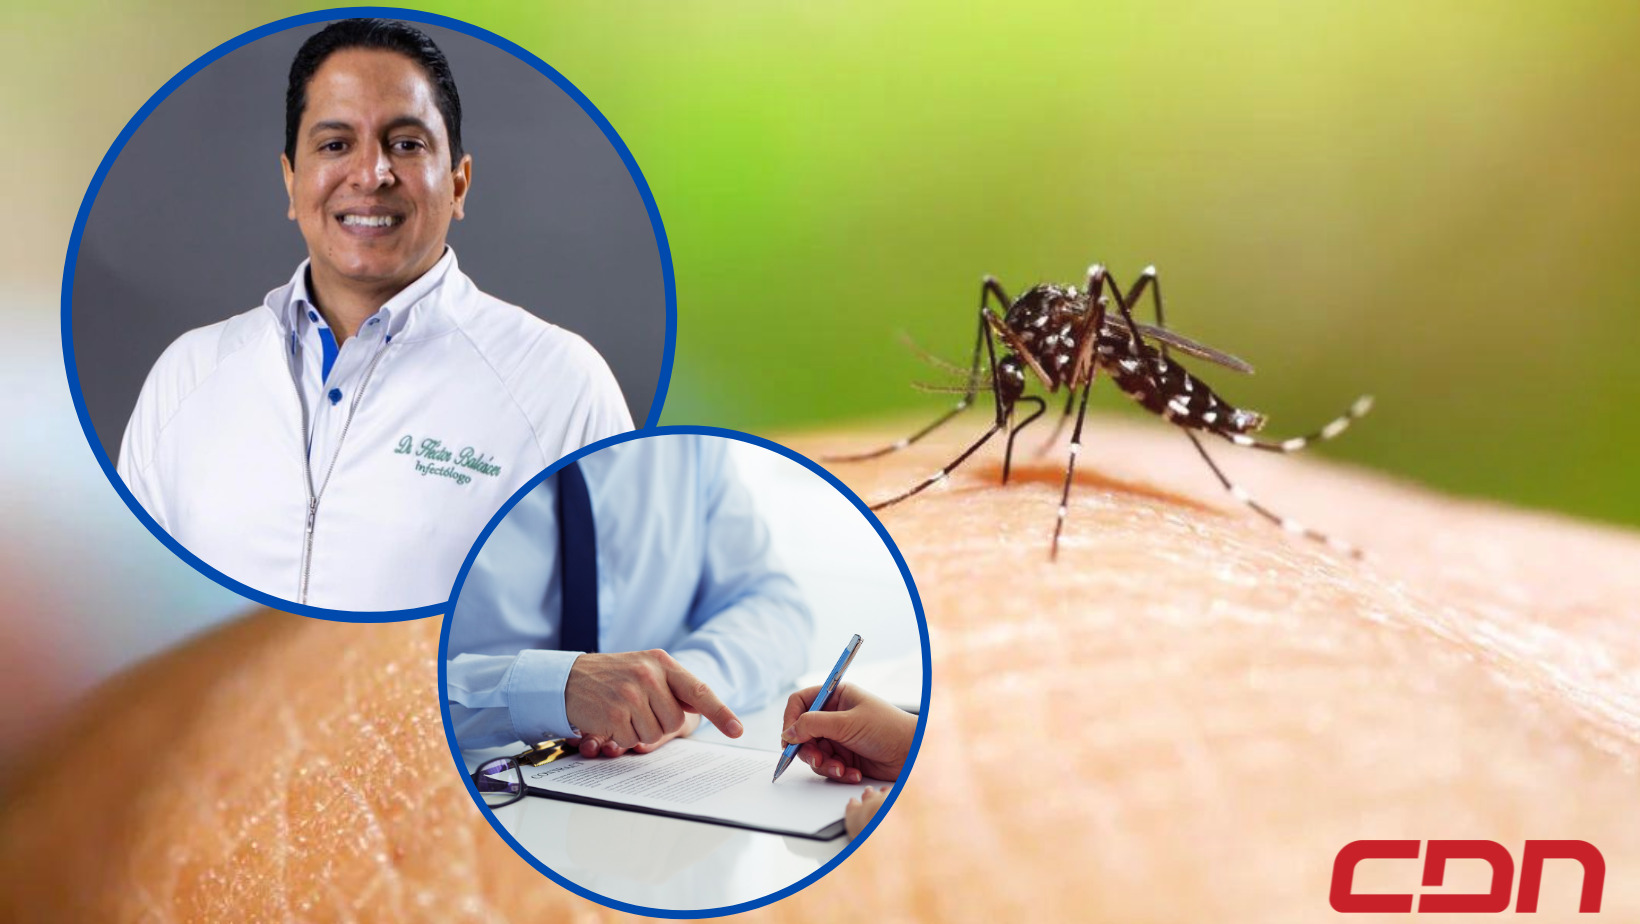 La epidemia del dengue: Recomendaciones que debes conocer